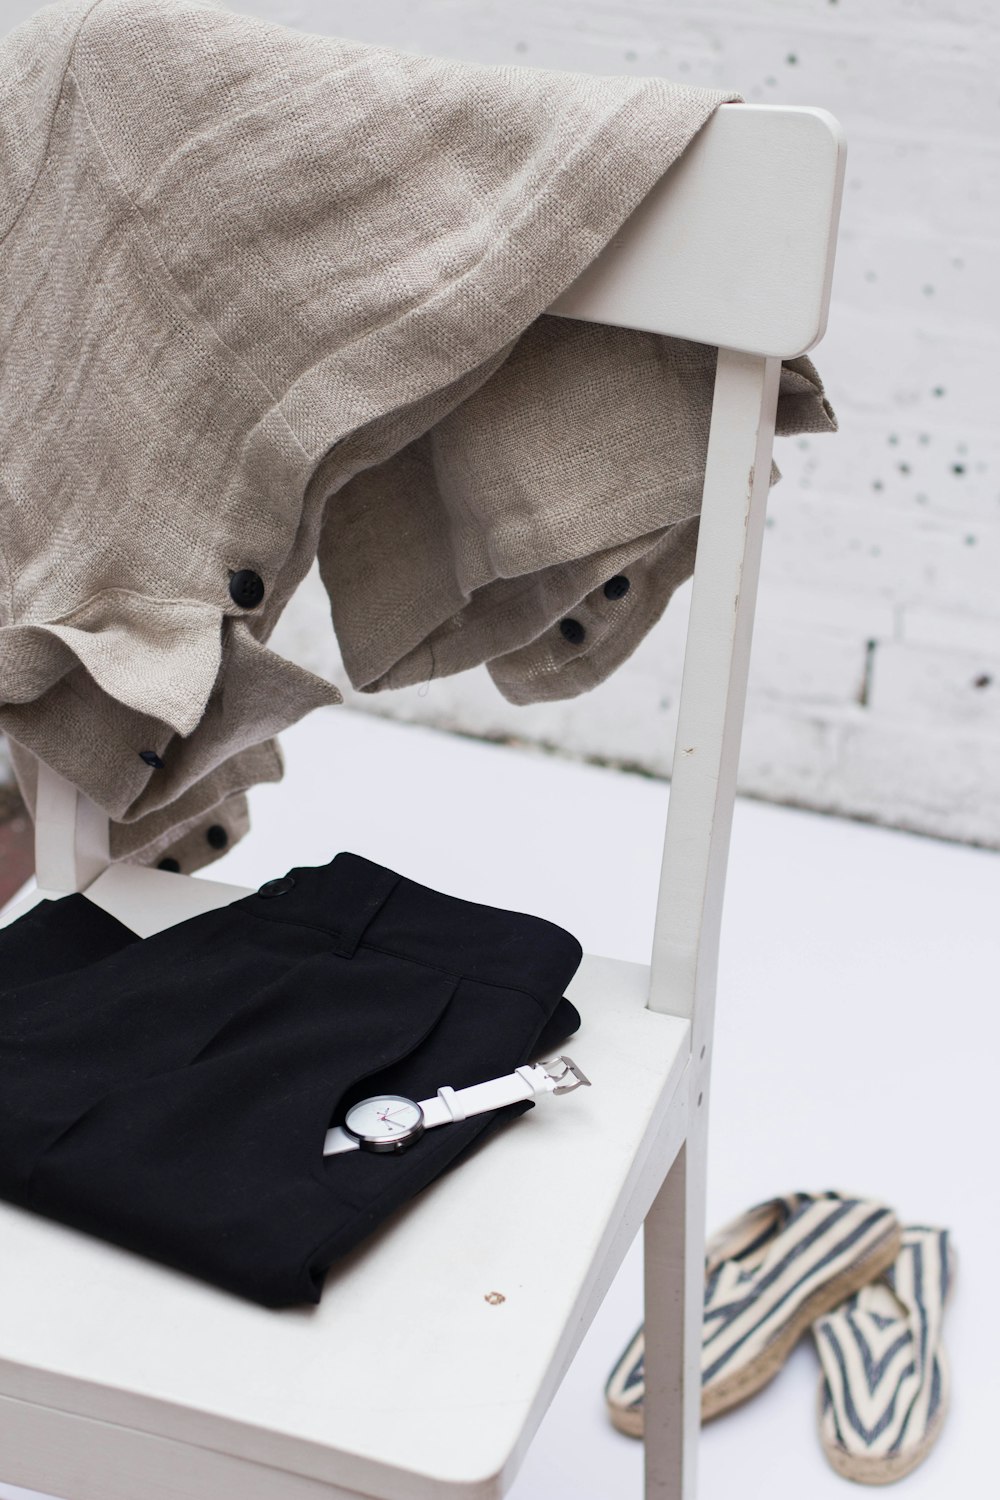 團體服設計 gray textile hanging on white wooden chair